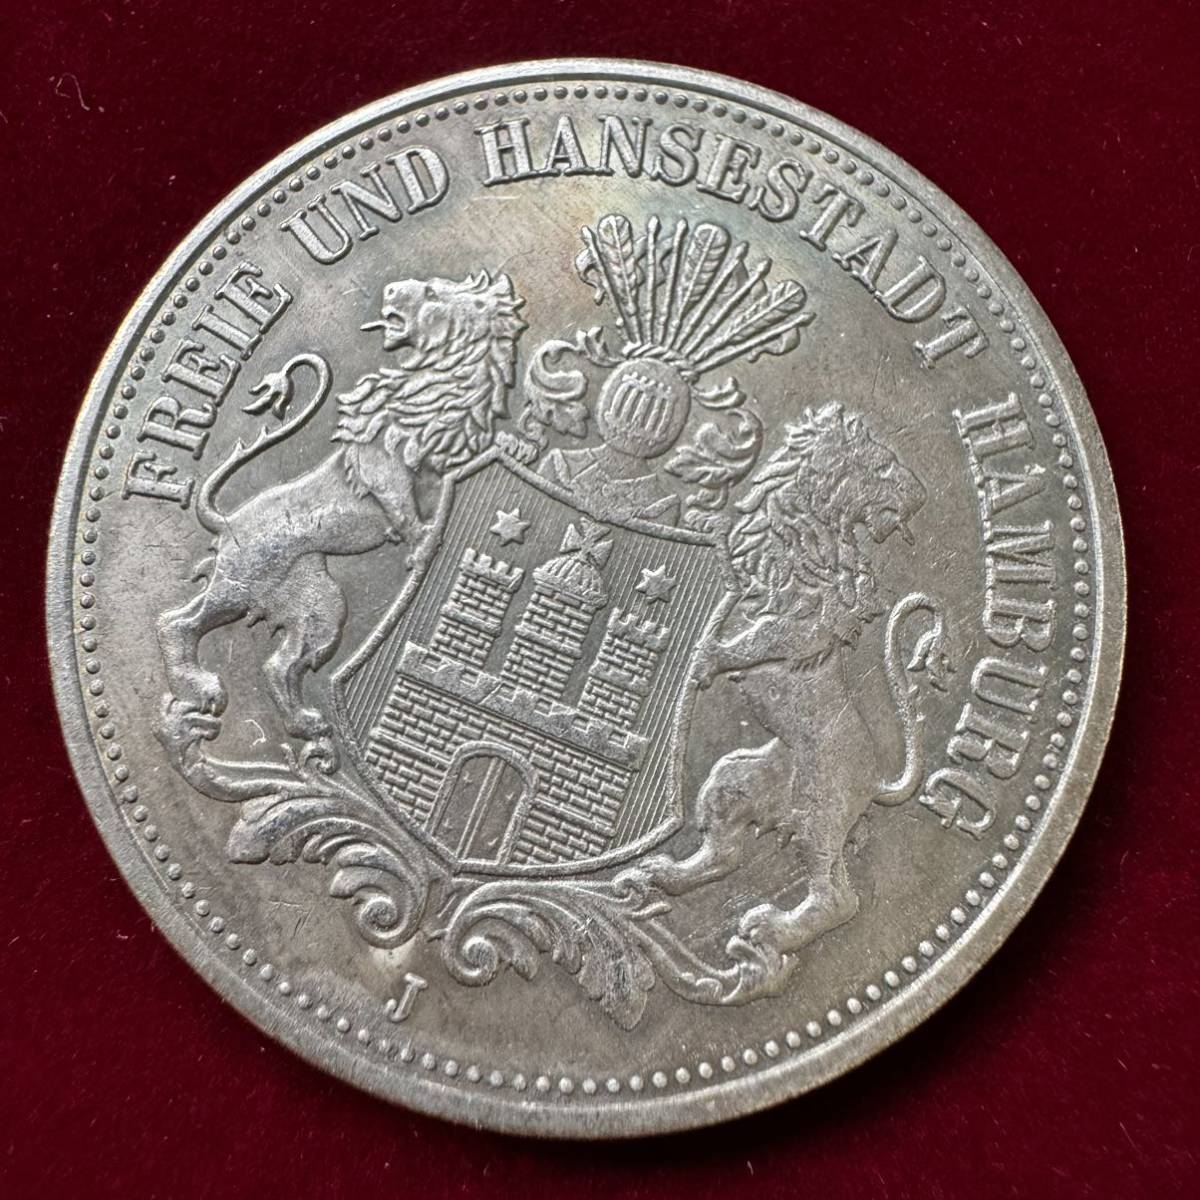 ドイツ 硬貨 古銭 ハンブルク州 1896年 ハンブルク州紋章 キャット・キャッスル マルク 国章 双頭の鷲 コイン 銀貨 外国古銭 海外硬貨_画像1